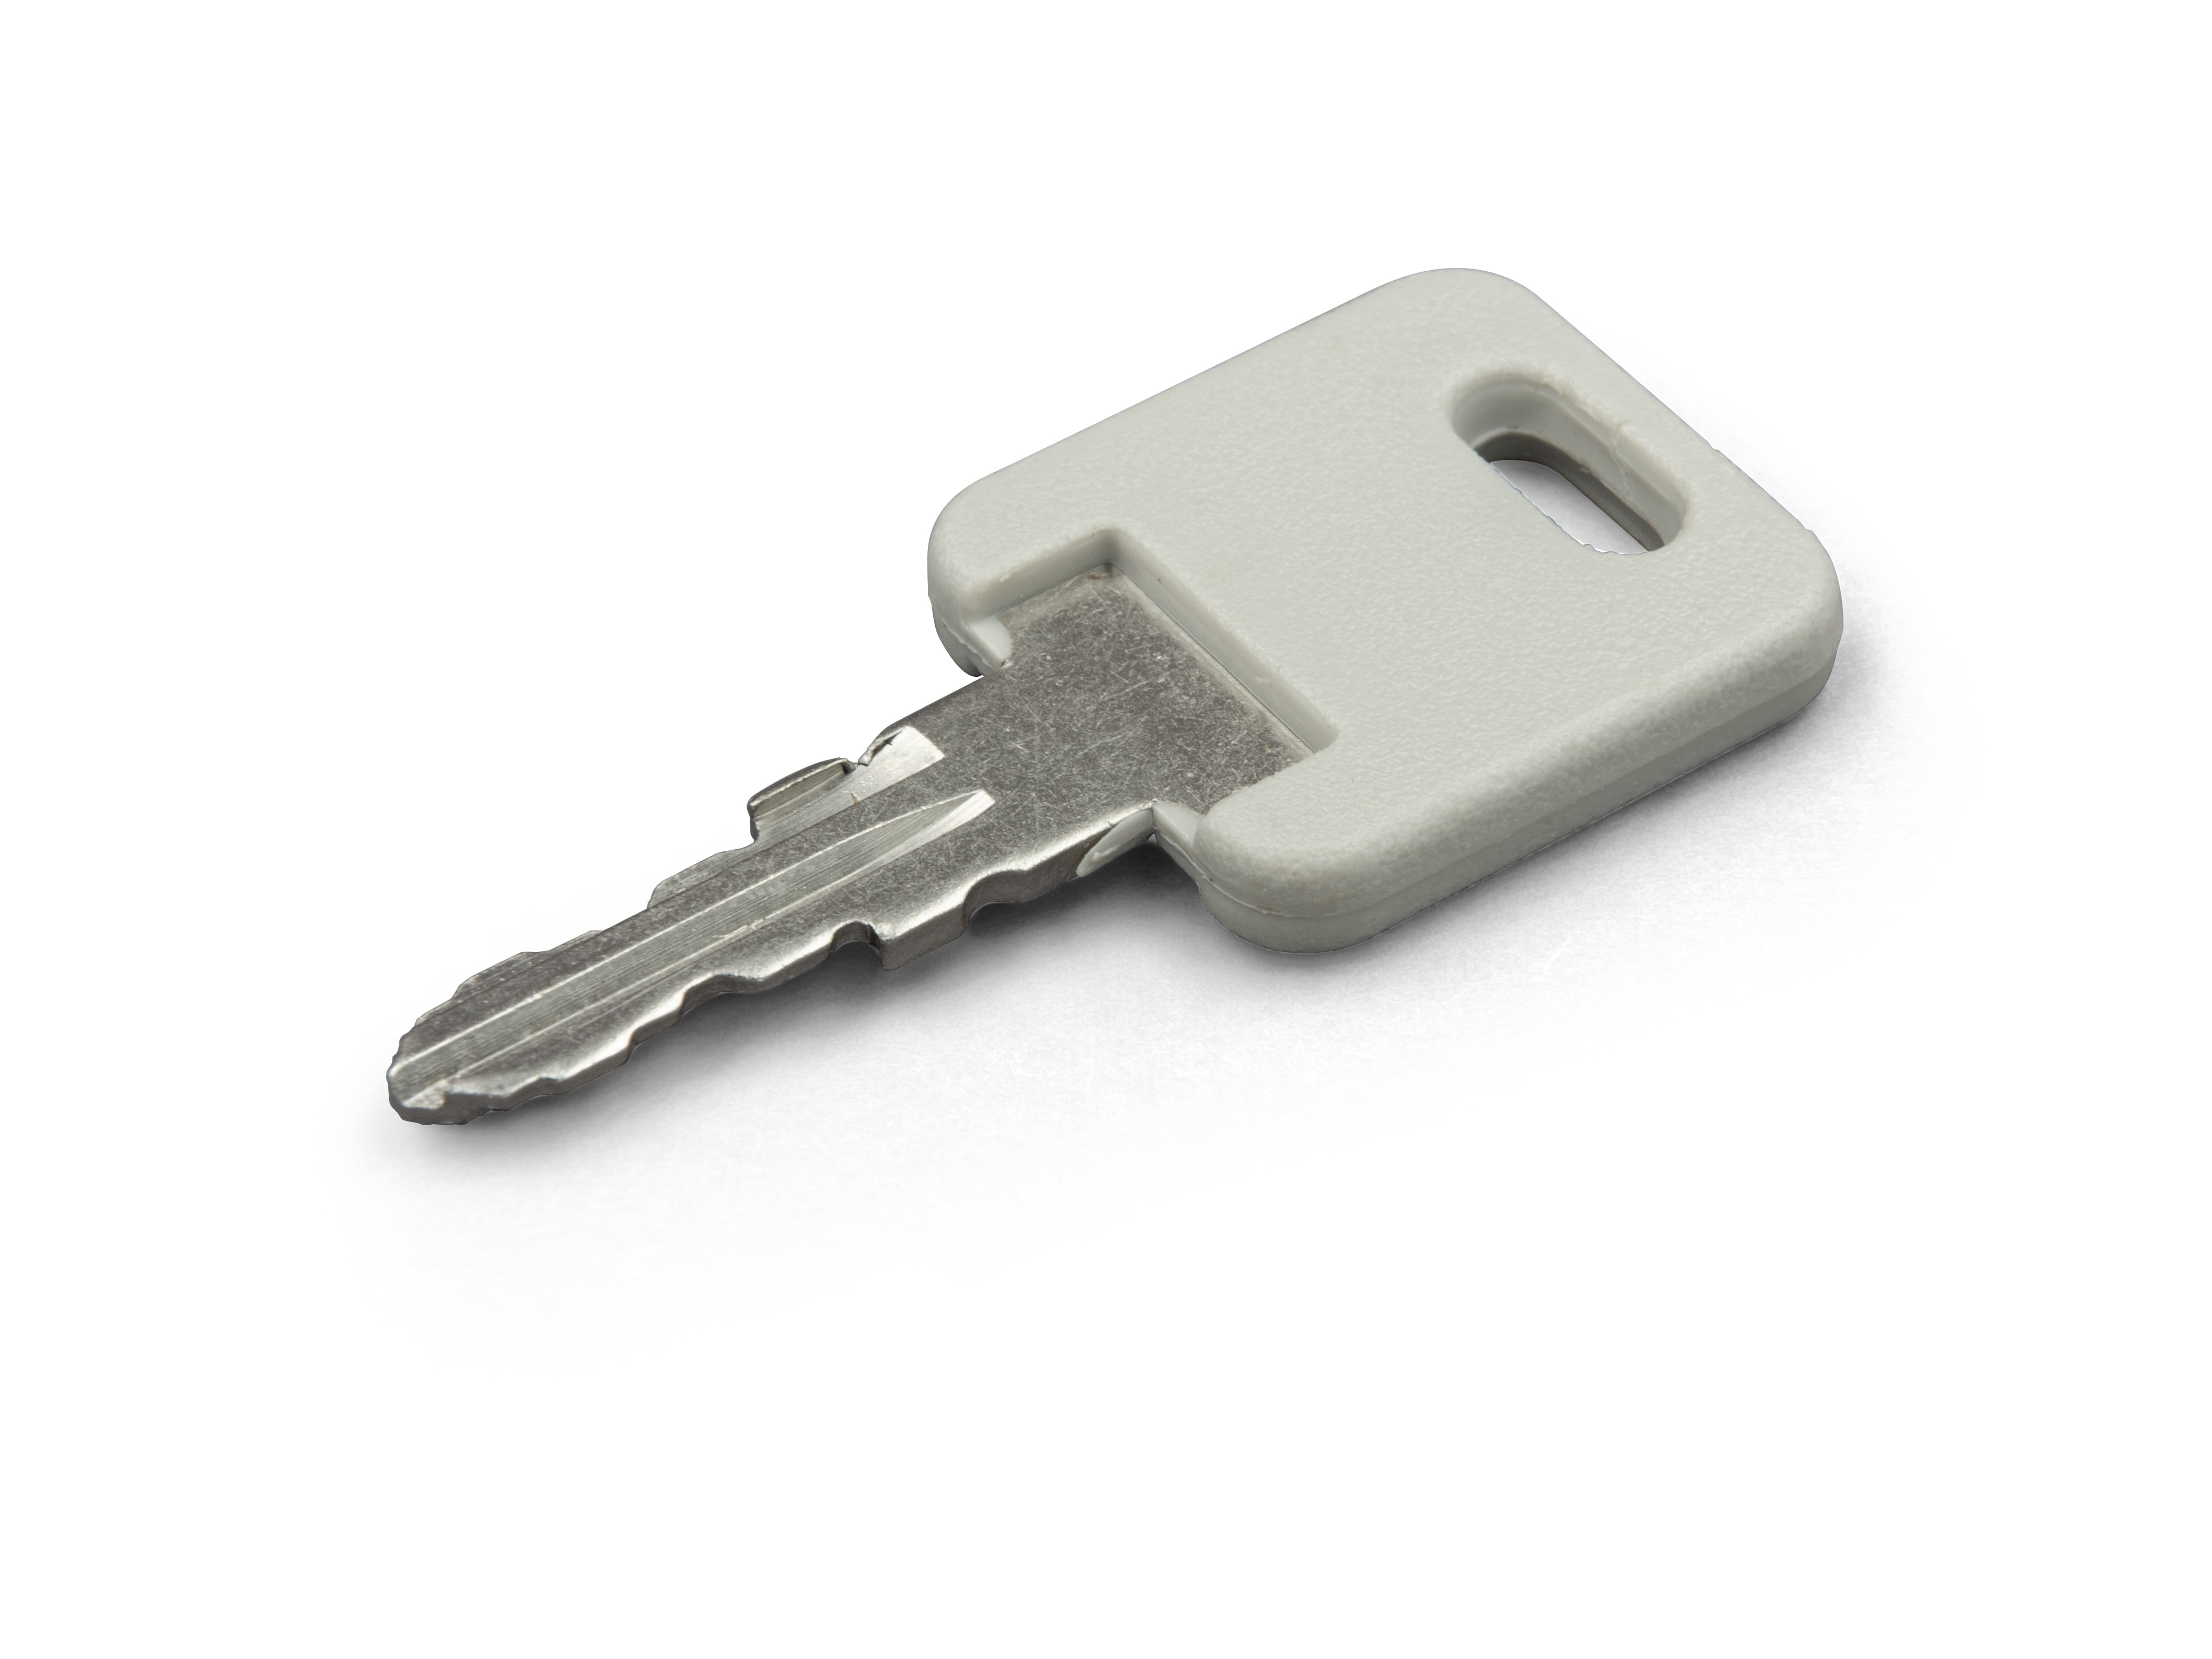 Details about    2 Global Link Aftermarket Camper Keys for G391 Storage compartments 